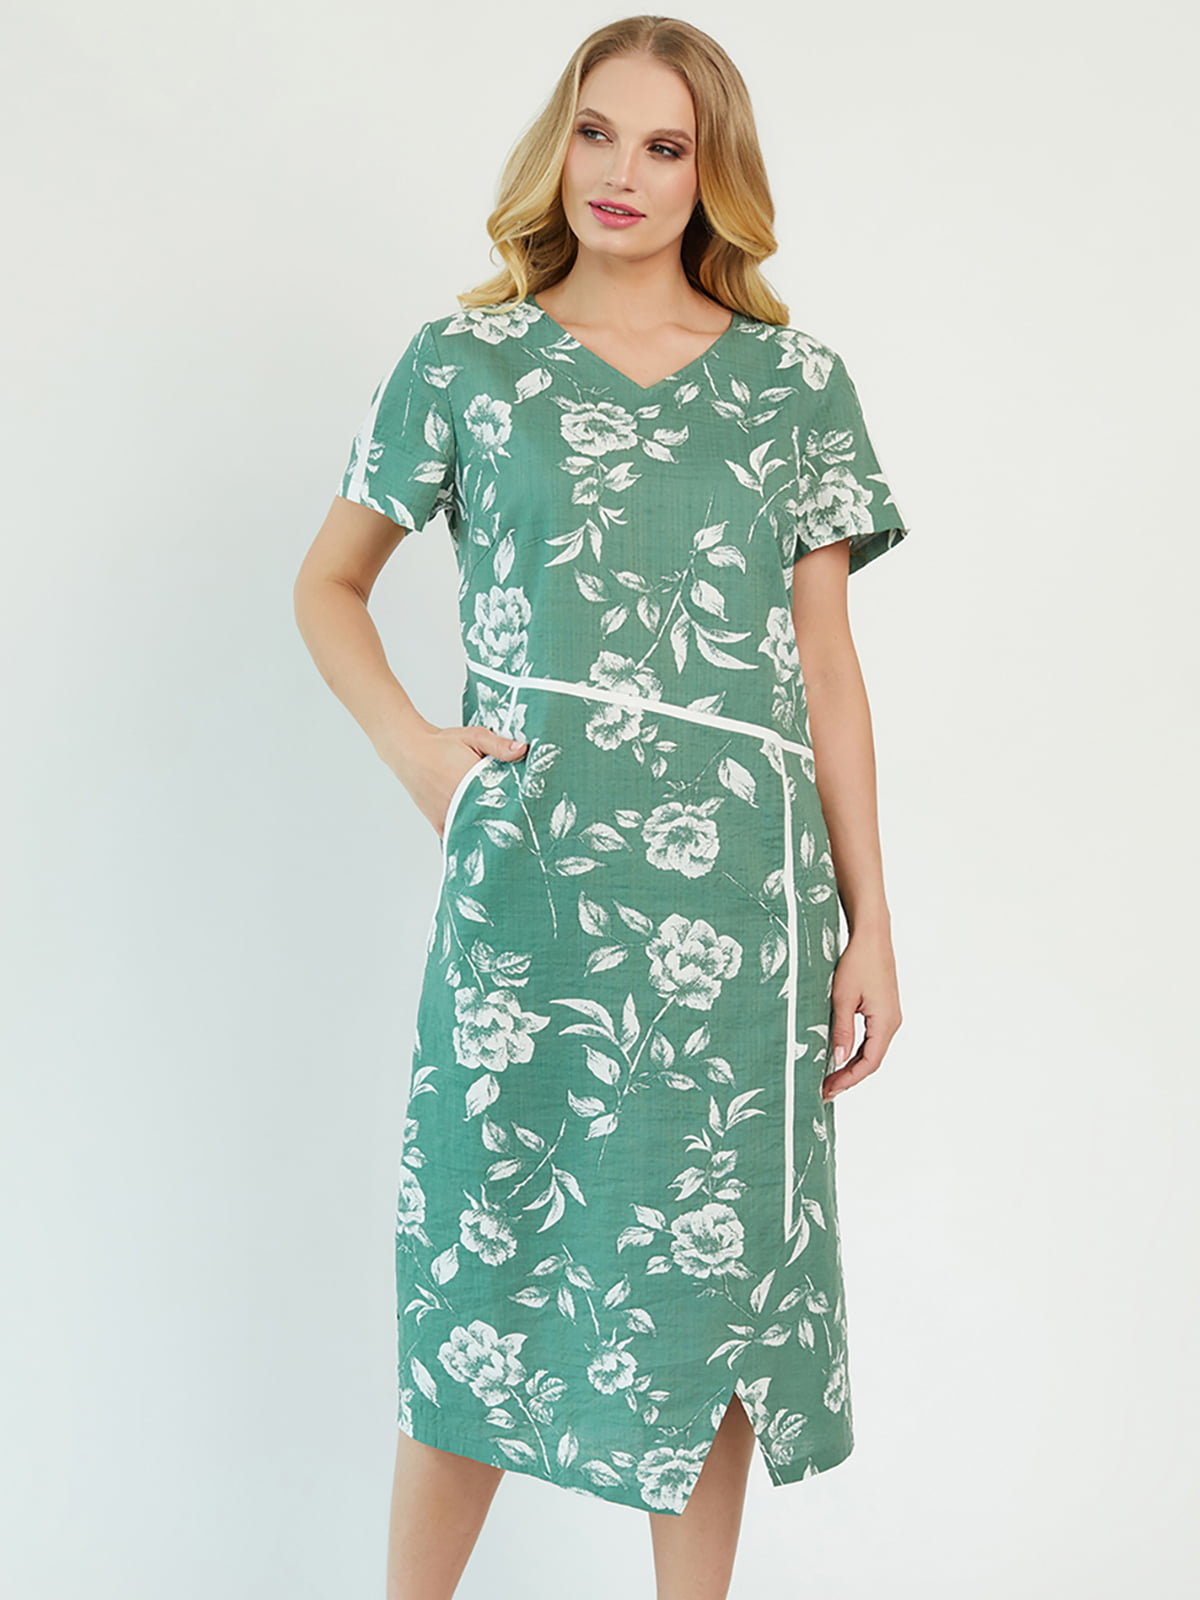 Платье оливкового цвета в цветочный принт | 5729206